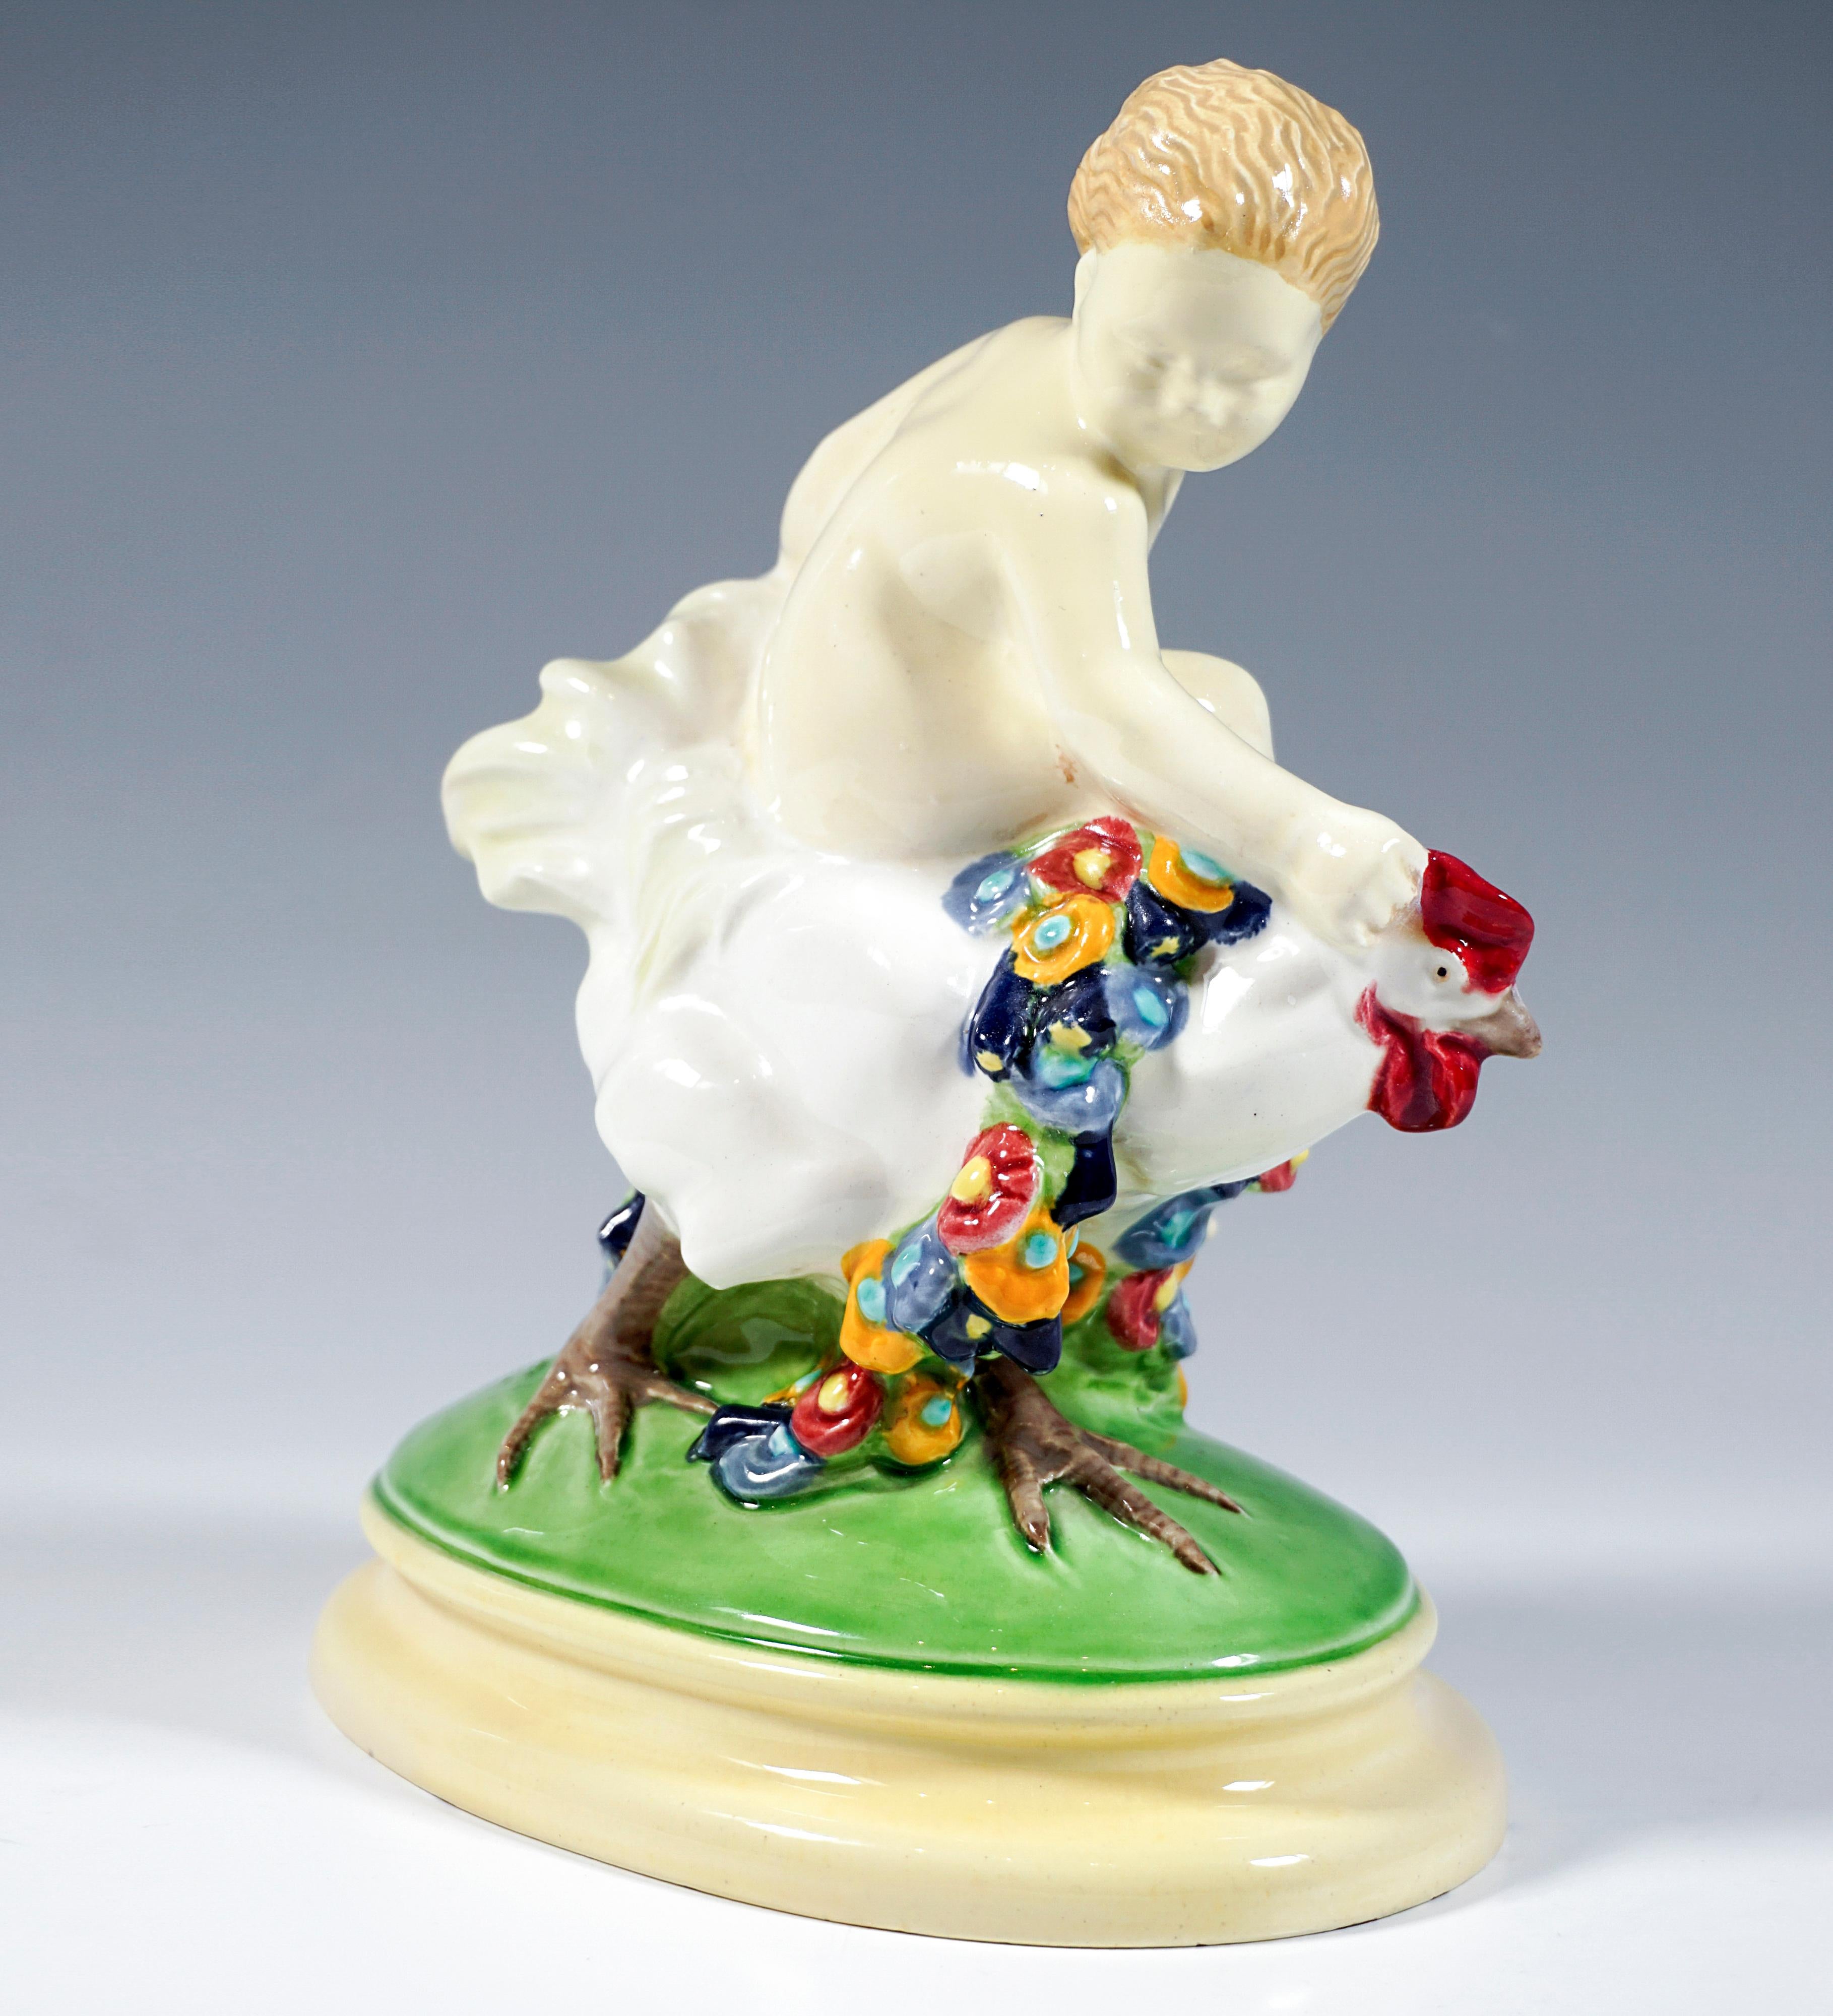 Ausgezeichnetes Wiener Jugendstil-Keramikstück:
Blonder Junge sitzt seitlich auf einem mit bunten Blumengirlanden geschmückten Hahn und hält sich an dessen Kamm und Gefieder fest.
Die Gruppe steht auf einem ovalen, grün und cremefarben bemalten,